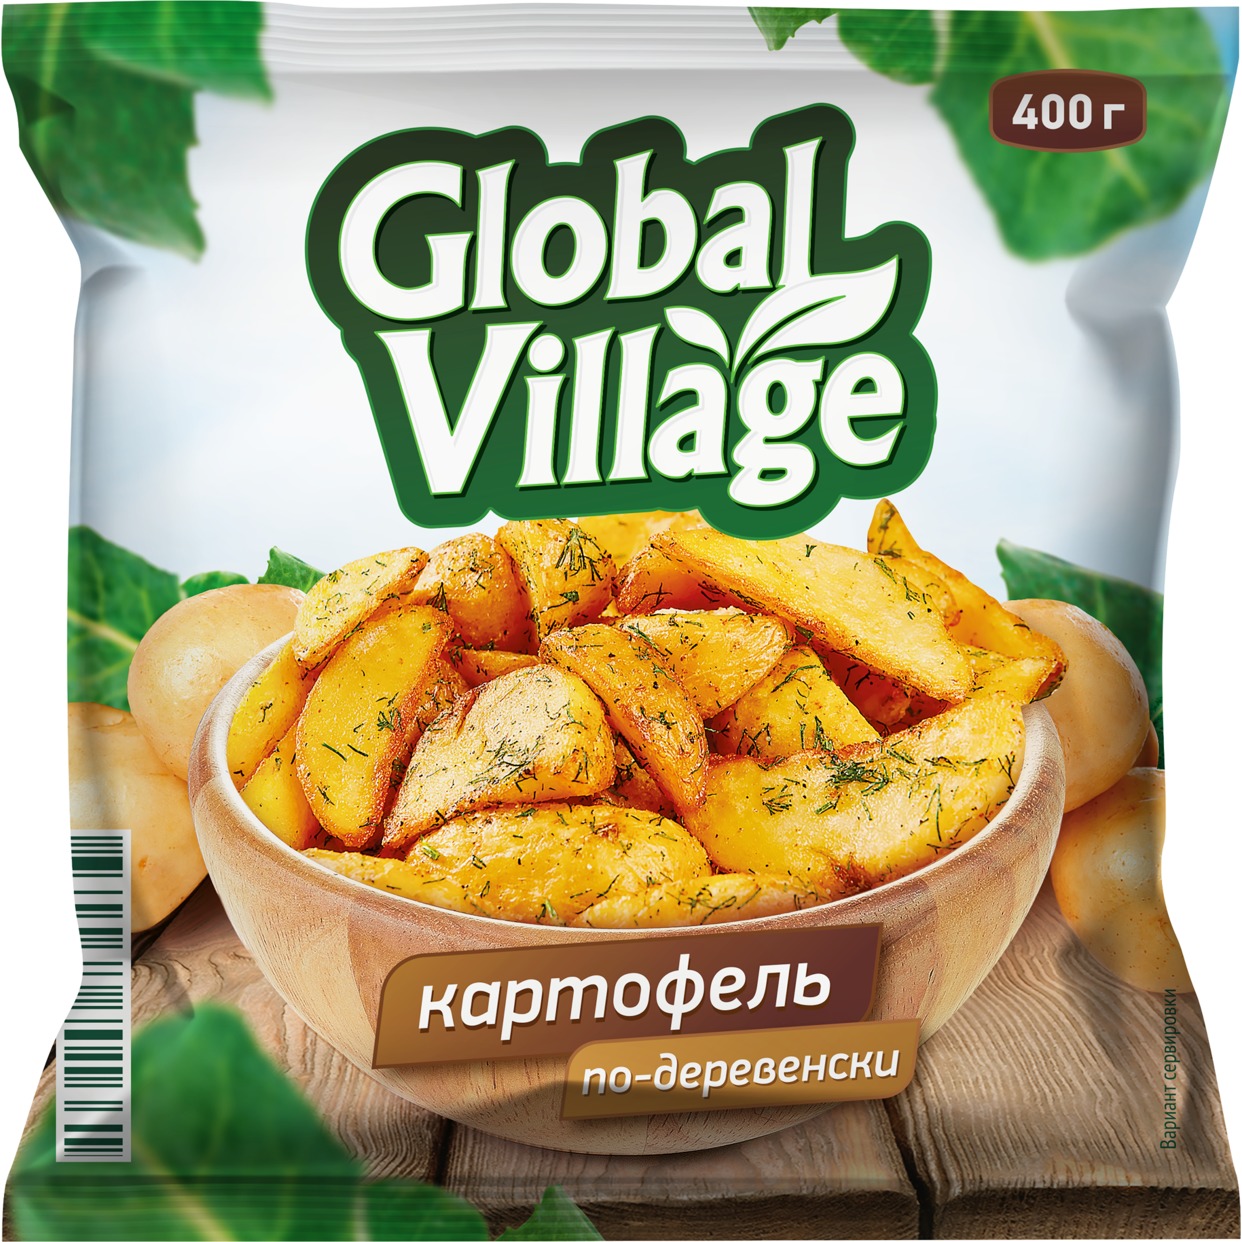 Замороженный картофель по-деревенски "Global Village" 0,400 по акции в Пятерочке